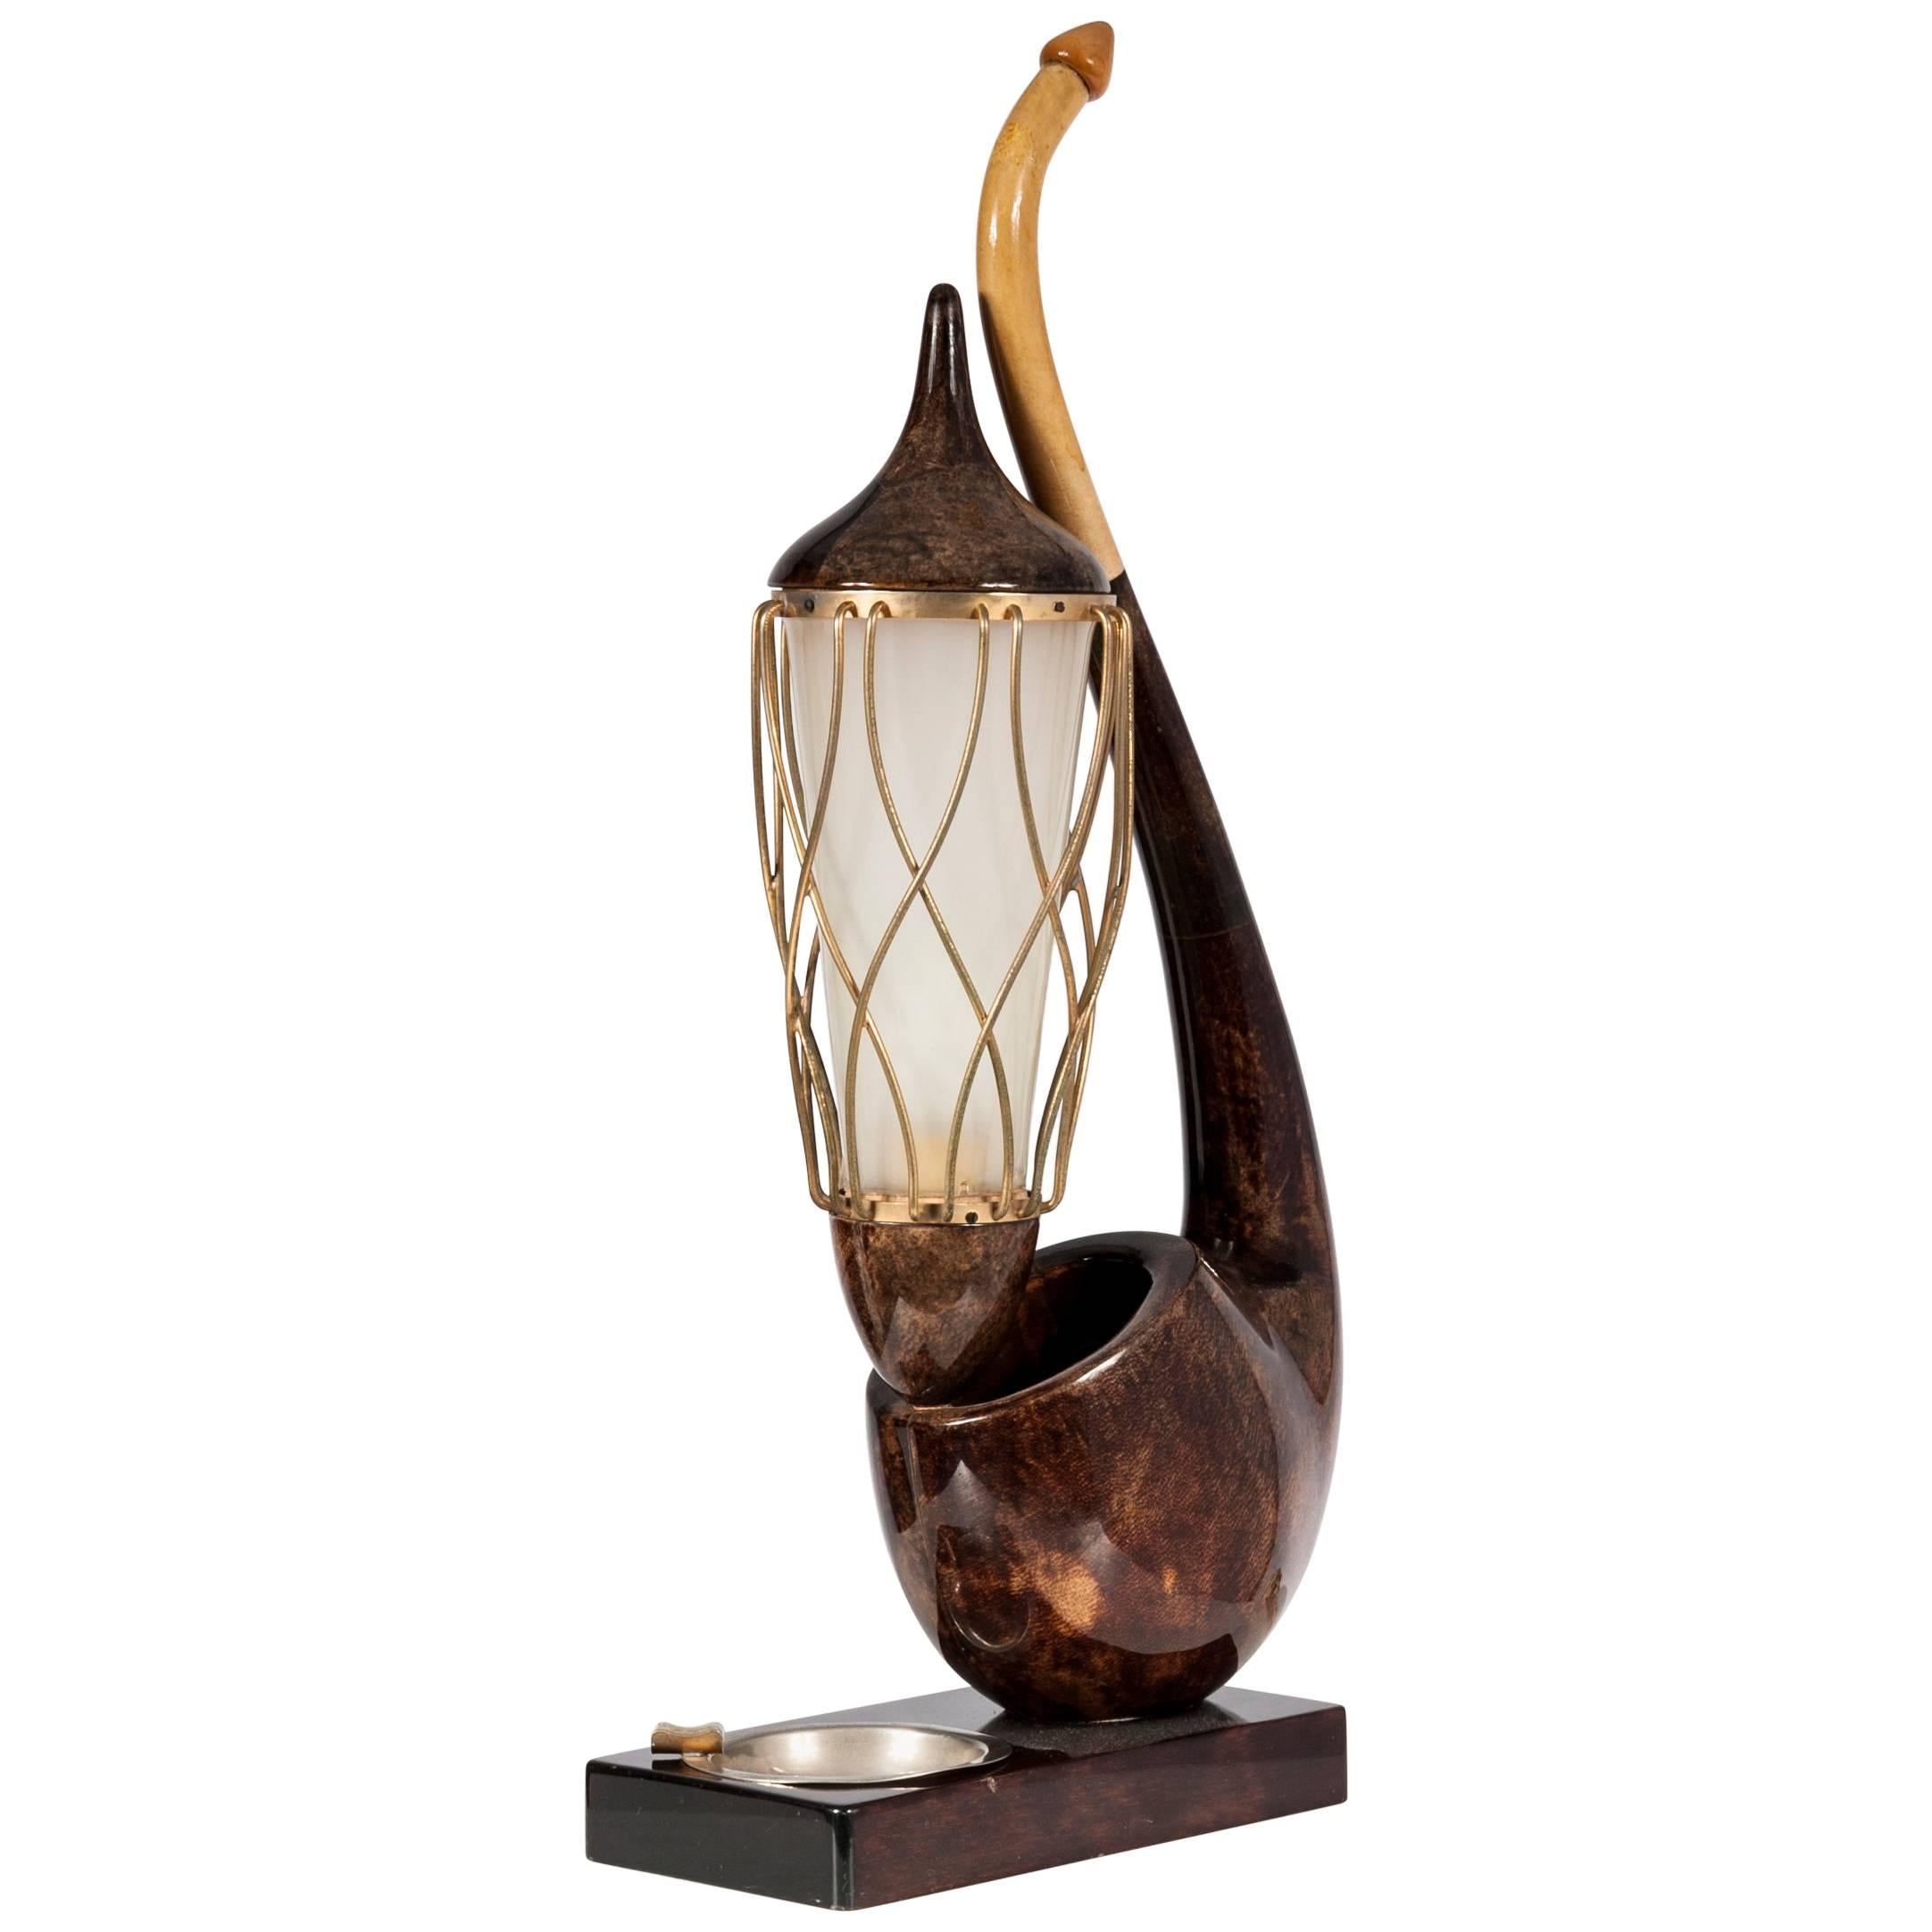 Table Lamp by Aldo Tura "ceci n'est pas une pipe"